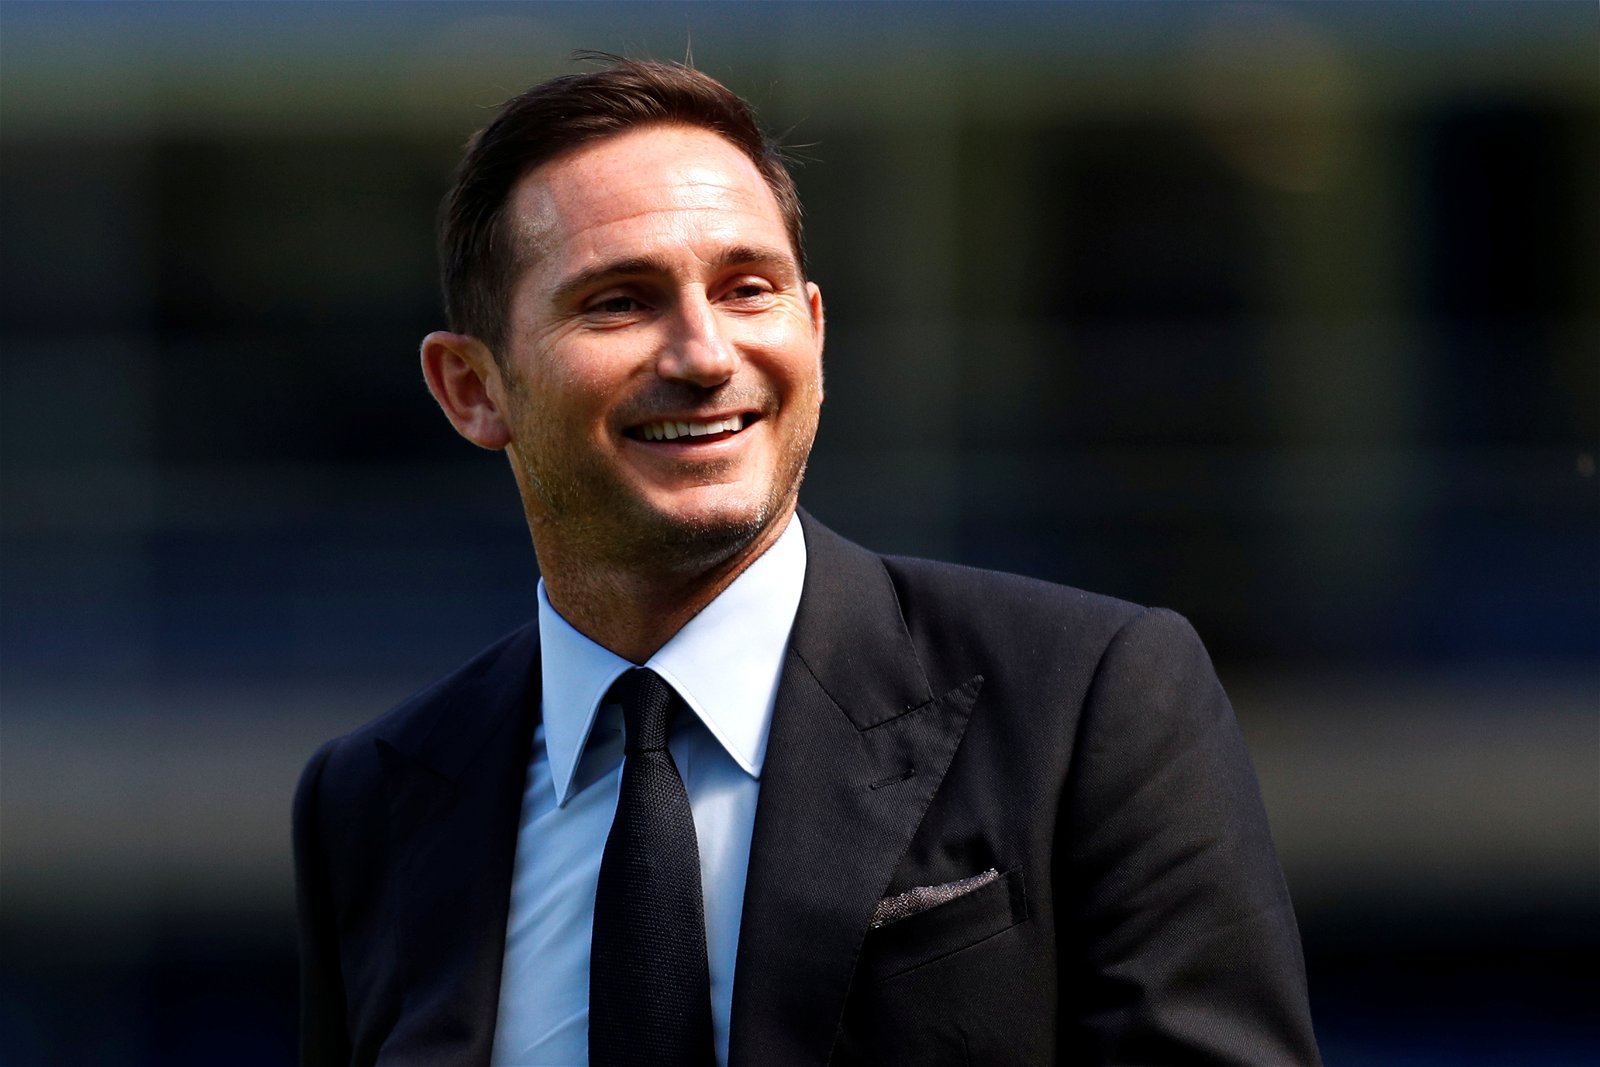 Lampard talks about Chelsea's Premier League chances